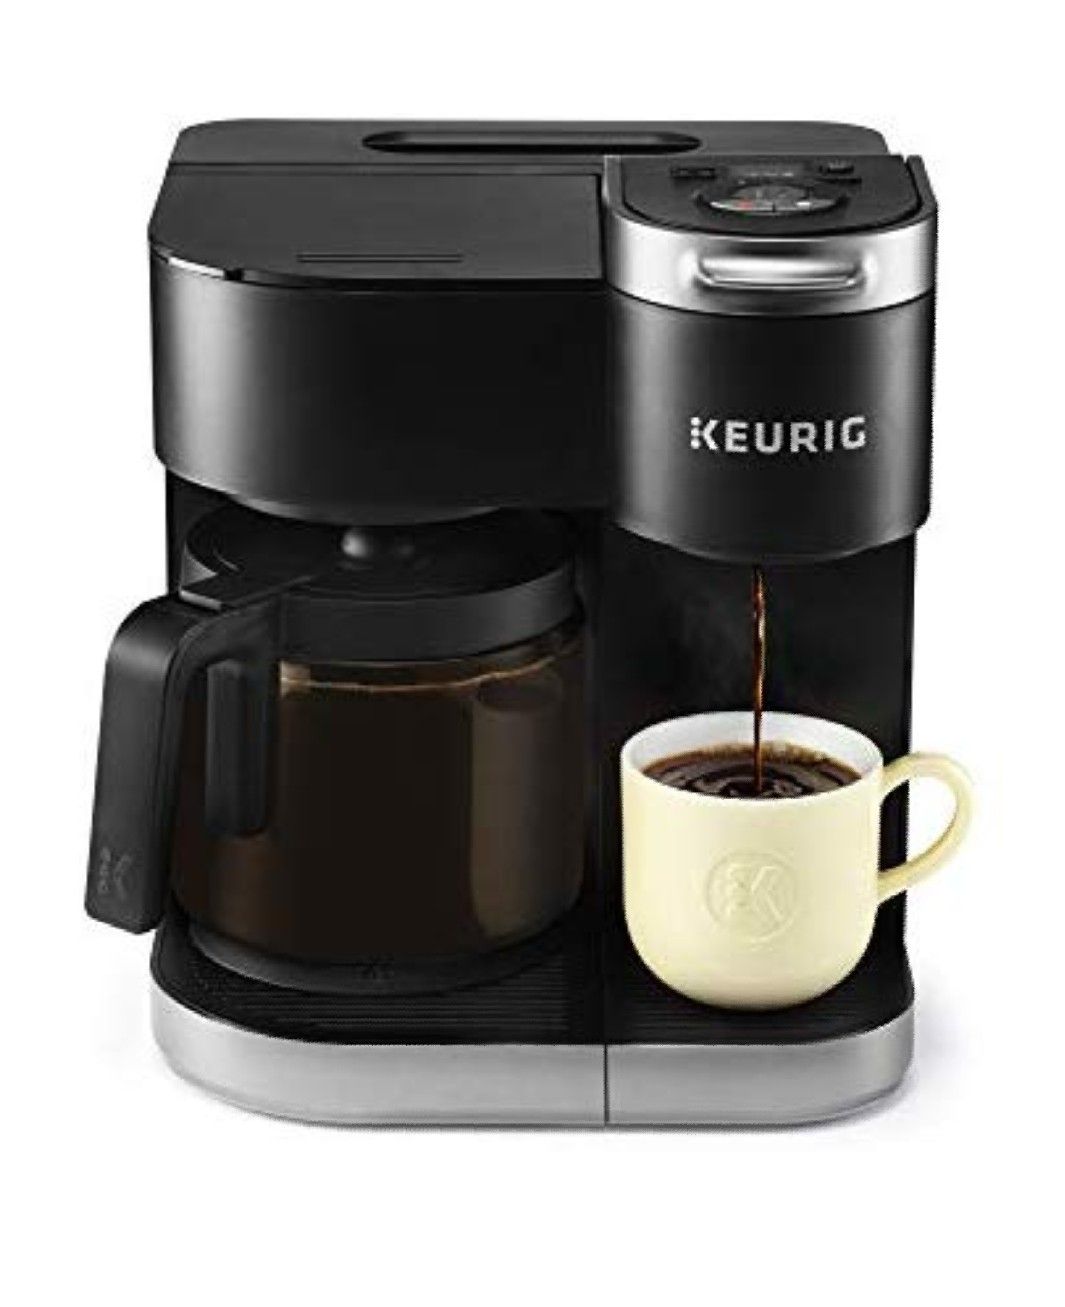 New Keurig K-Duo Coffee Maker